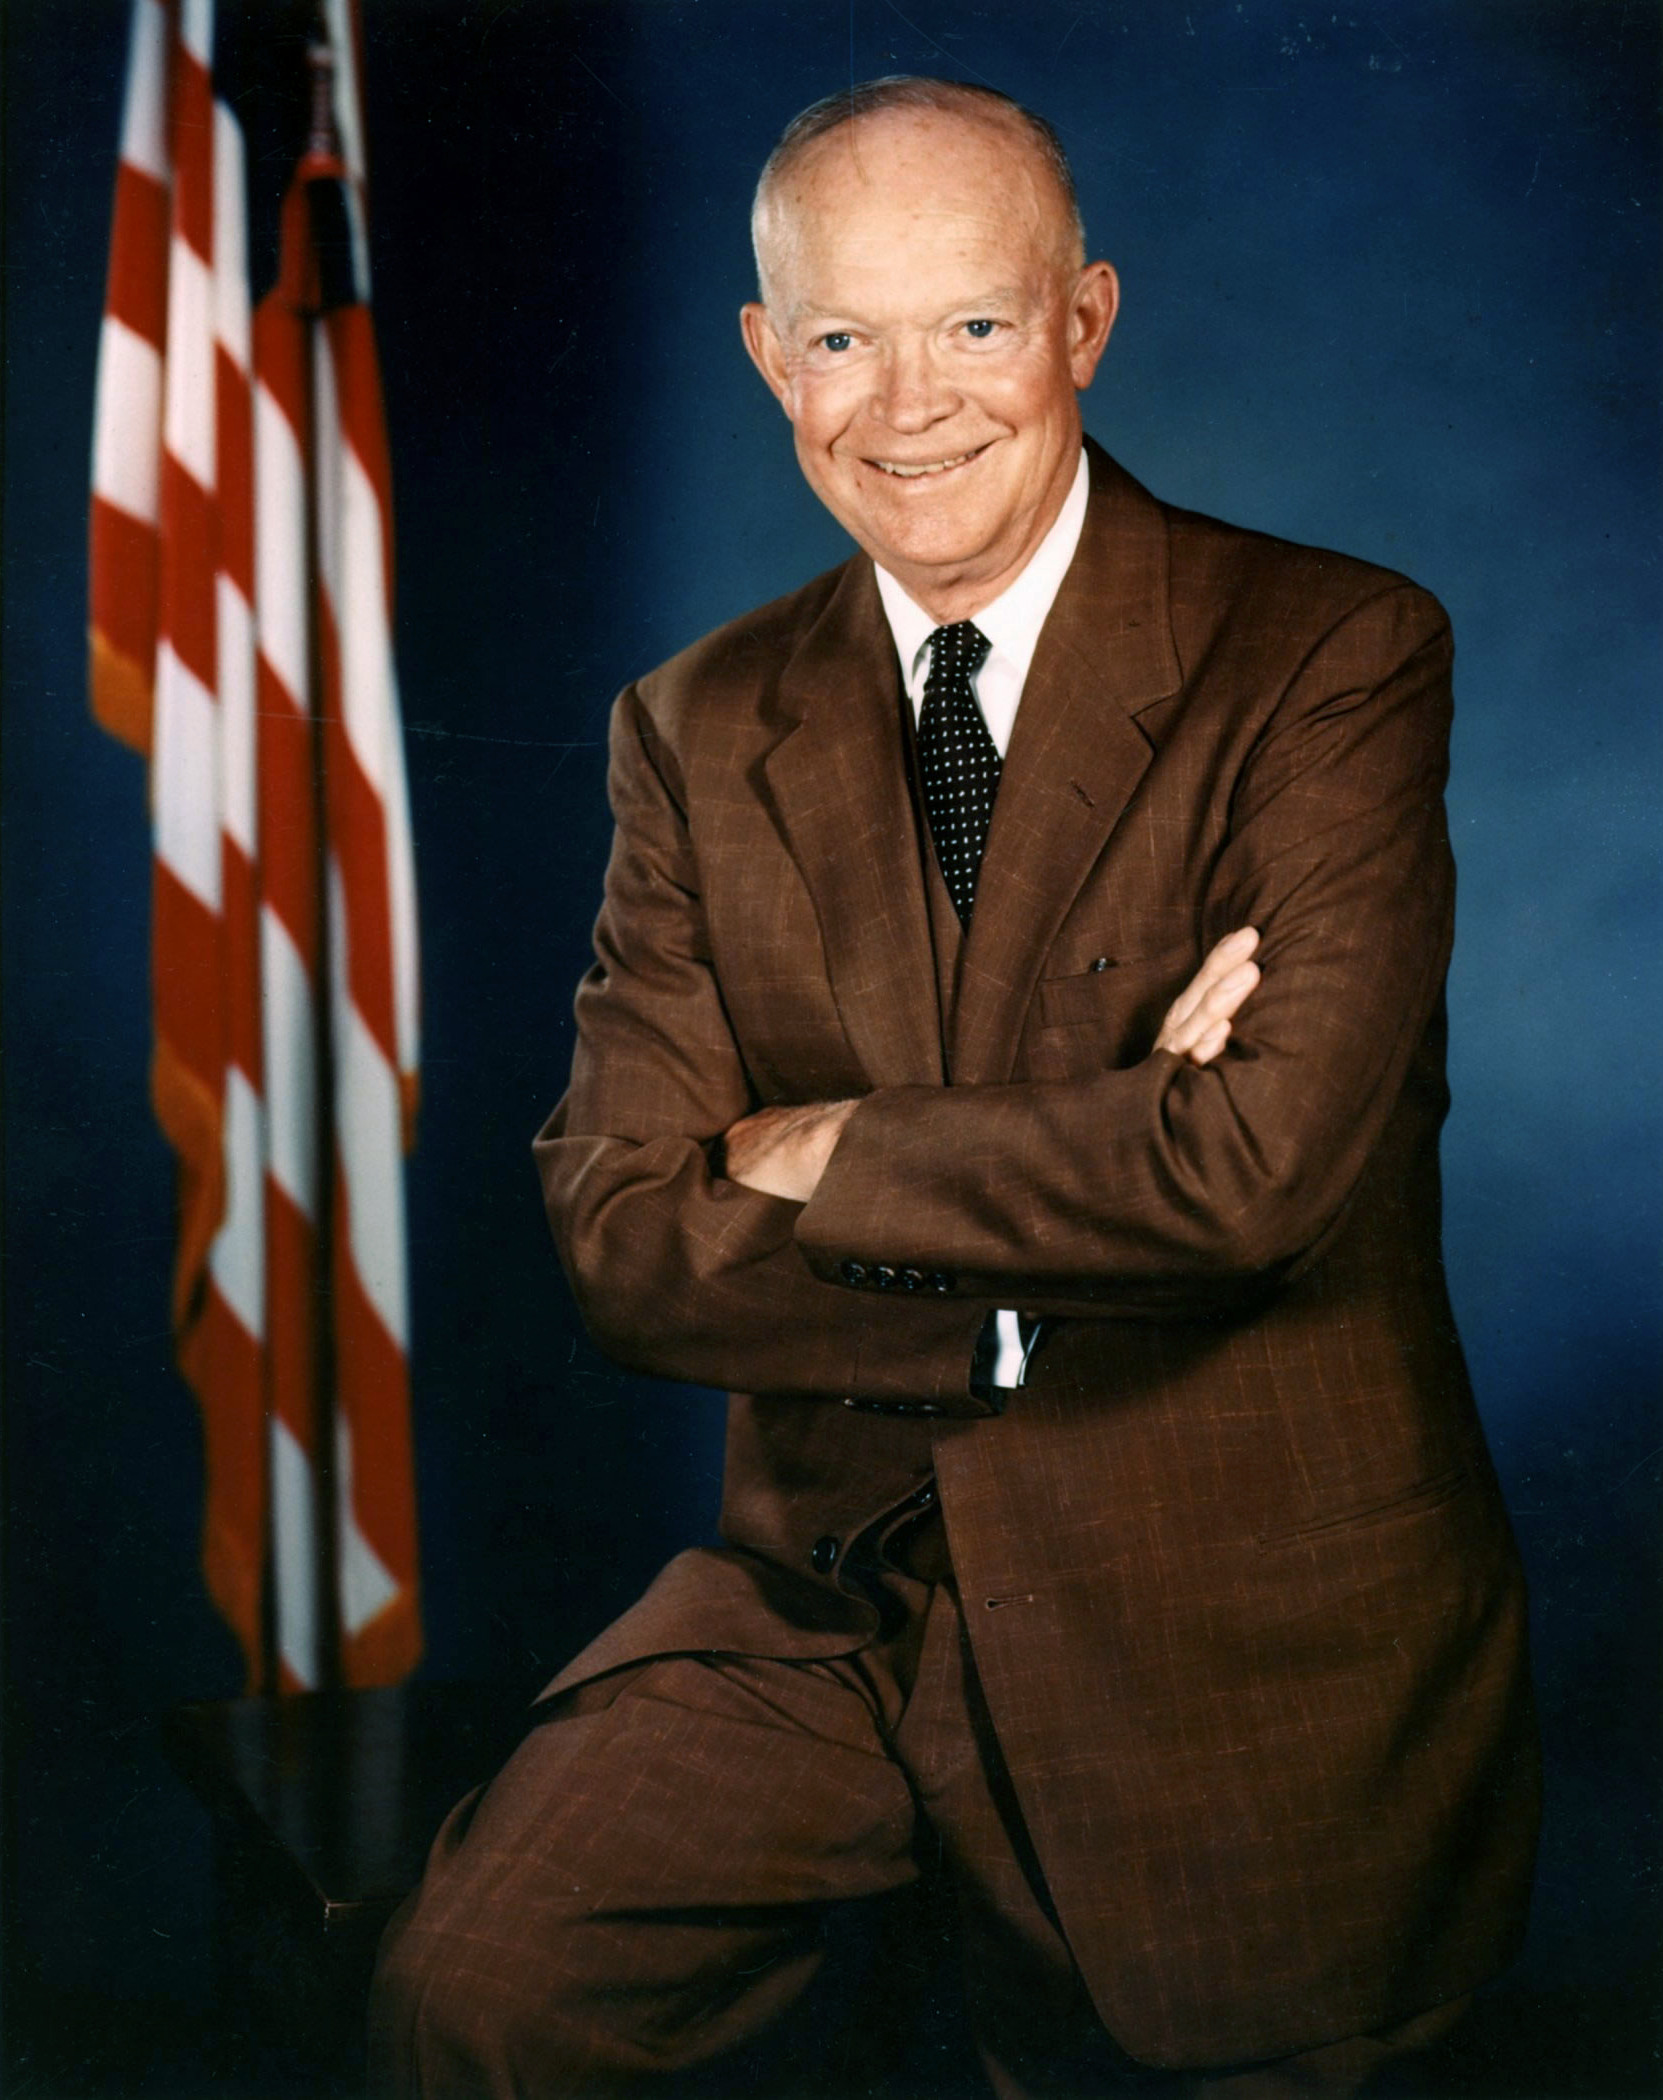 Eisenhower_official.jpg